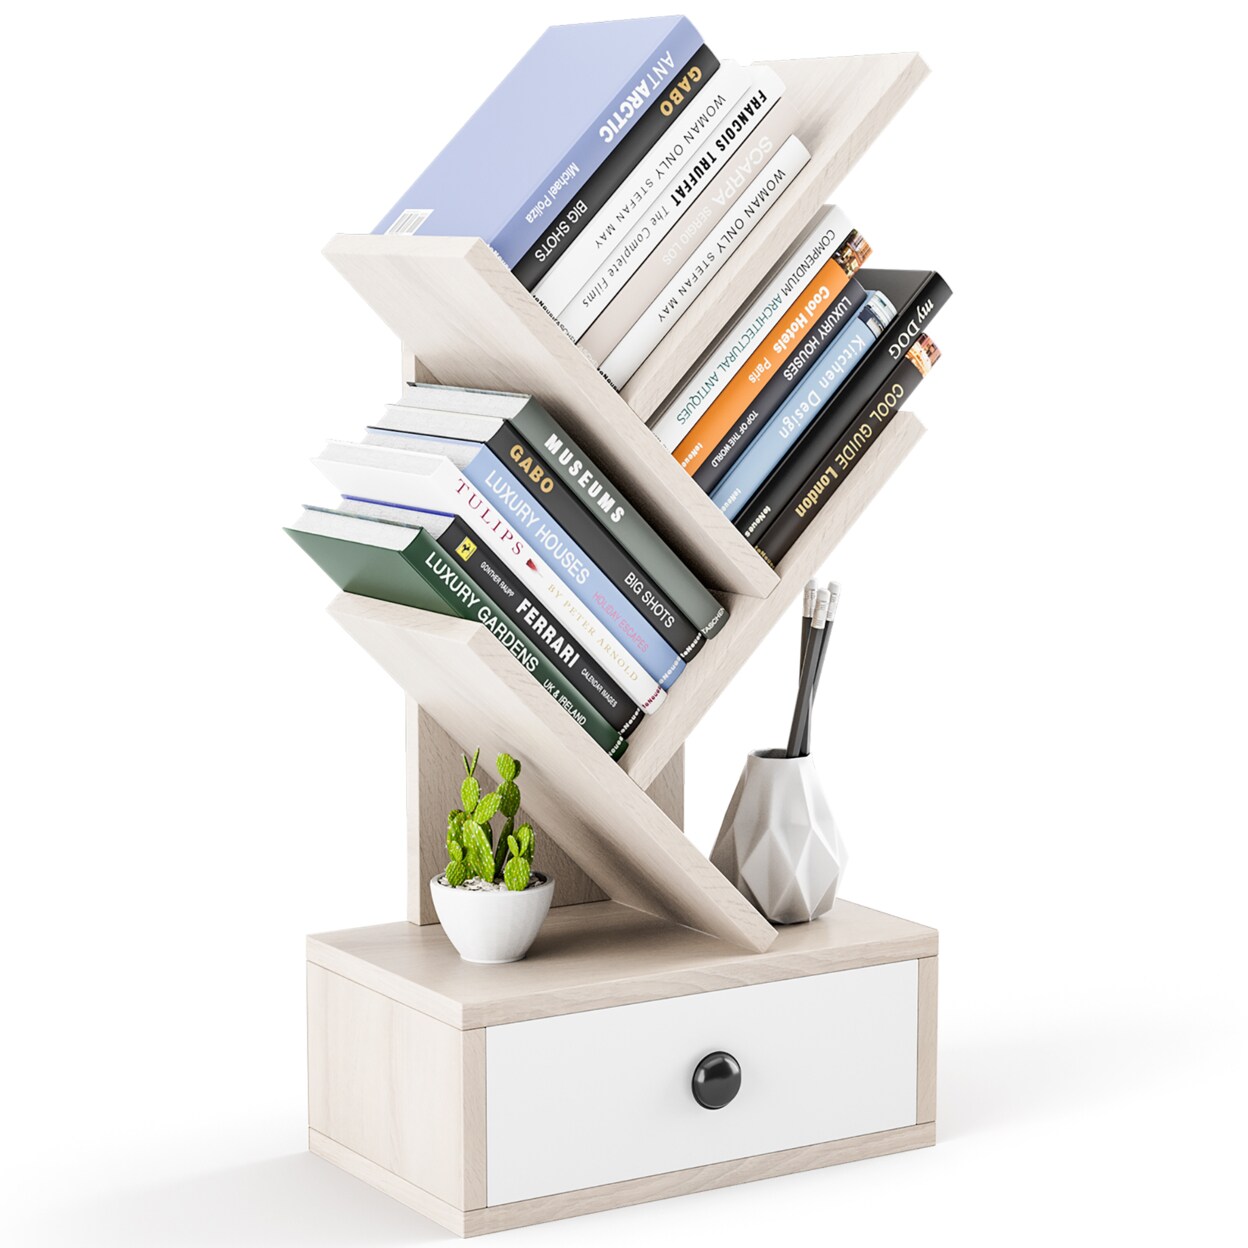 Gymax 5-Tier Tree Bookshelf w/ Wooden Drawer Display Storage Organizer Rack